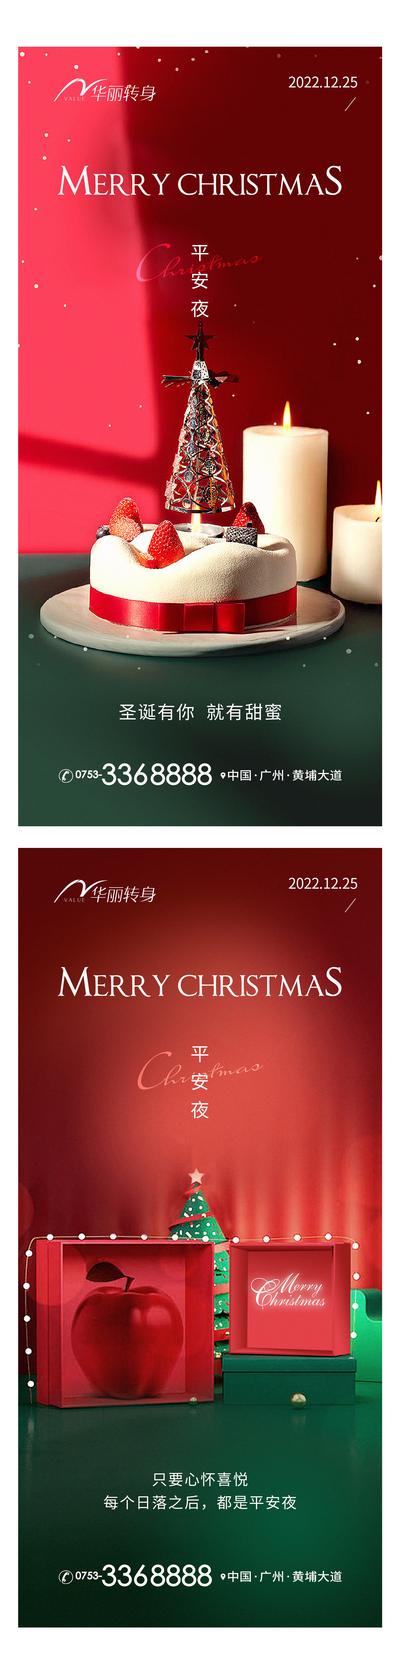 南门网 海报 房地产 公历节日 圣诞节 圣诞树 苹果 平安夜 礼物 蛋糕 甜蜜